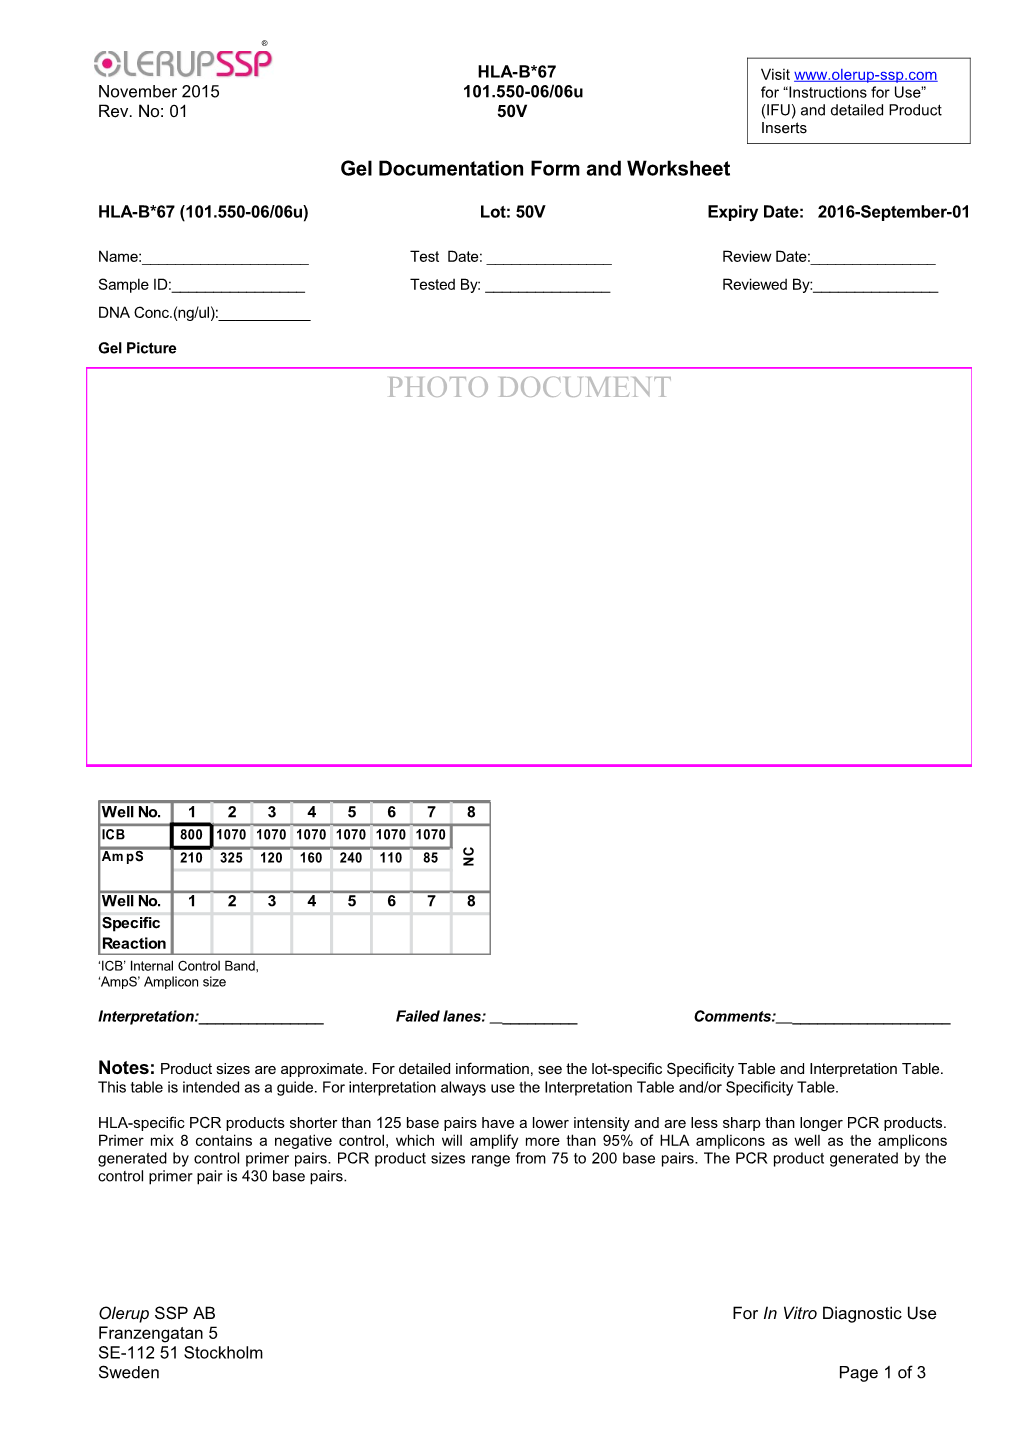 Gel Documentation Form and Worksheet